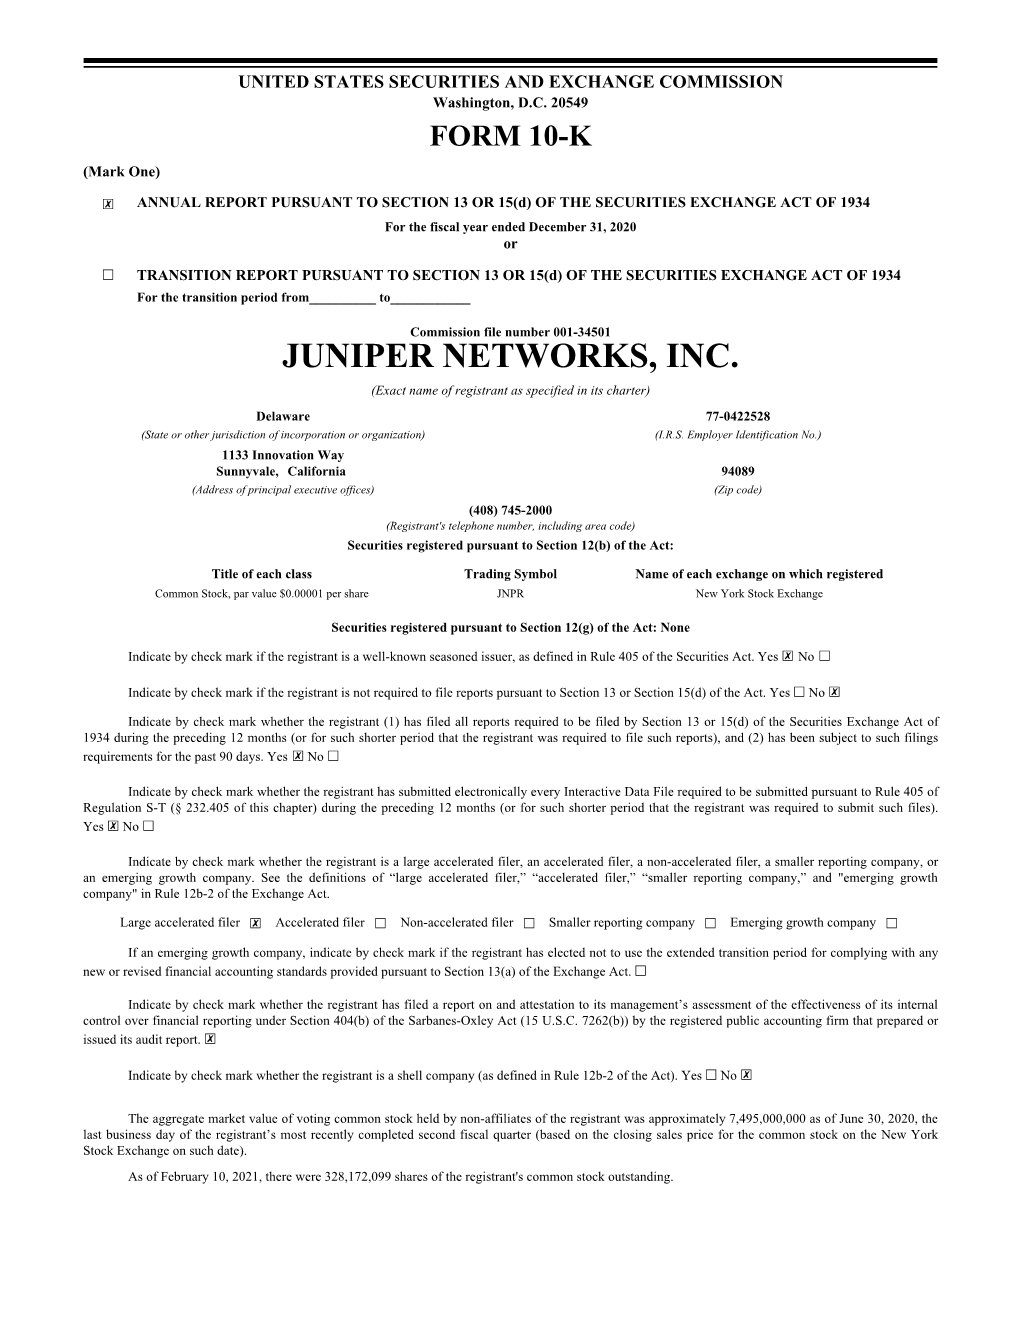 Juniper Networks, Inc